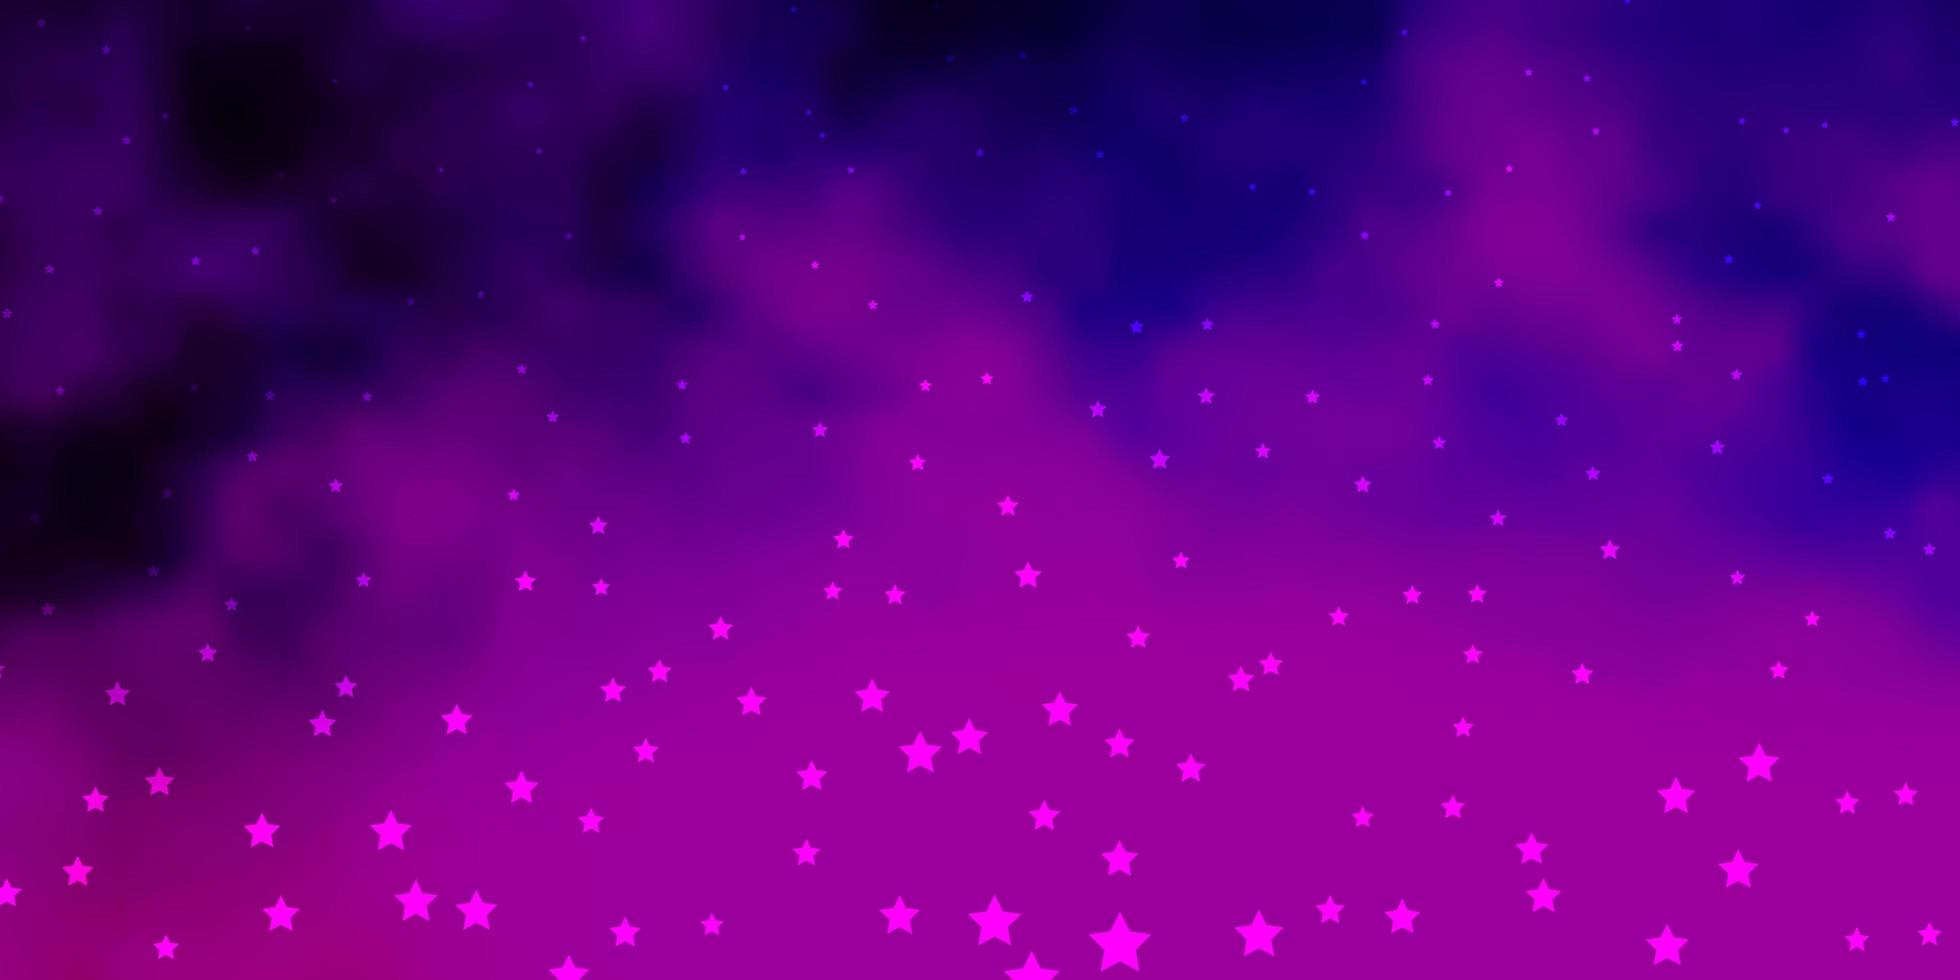 layout de vetor rosa roxo escuro com estrelas brilhantes desfocar design decorativo em estilo simples com padrão de estrelas para páginas de destino de sites